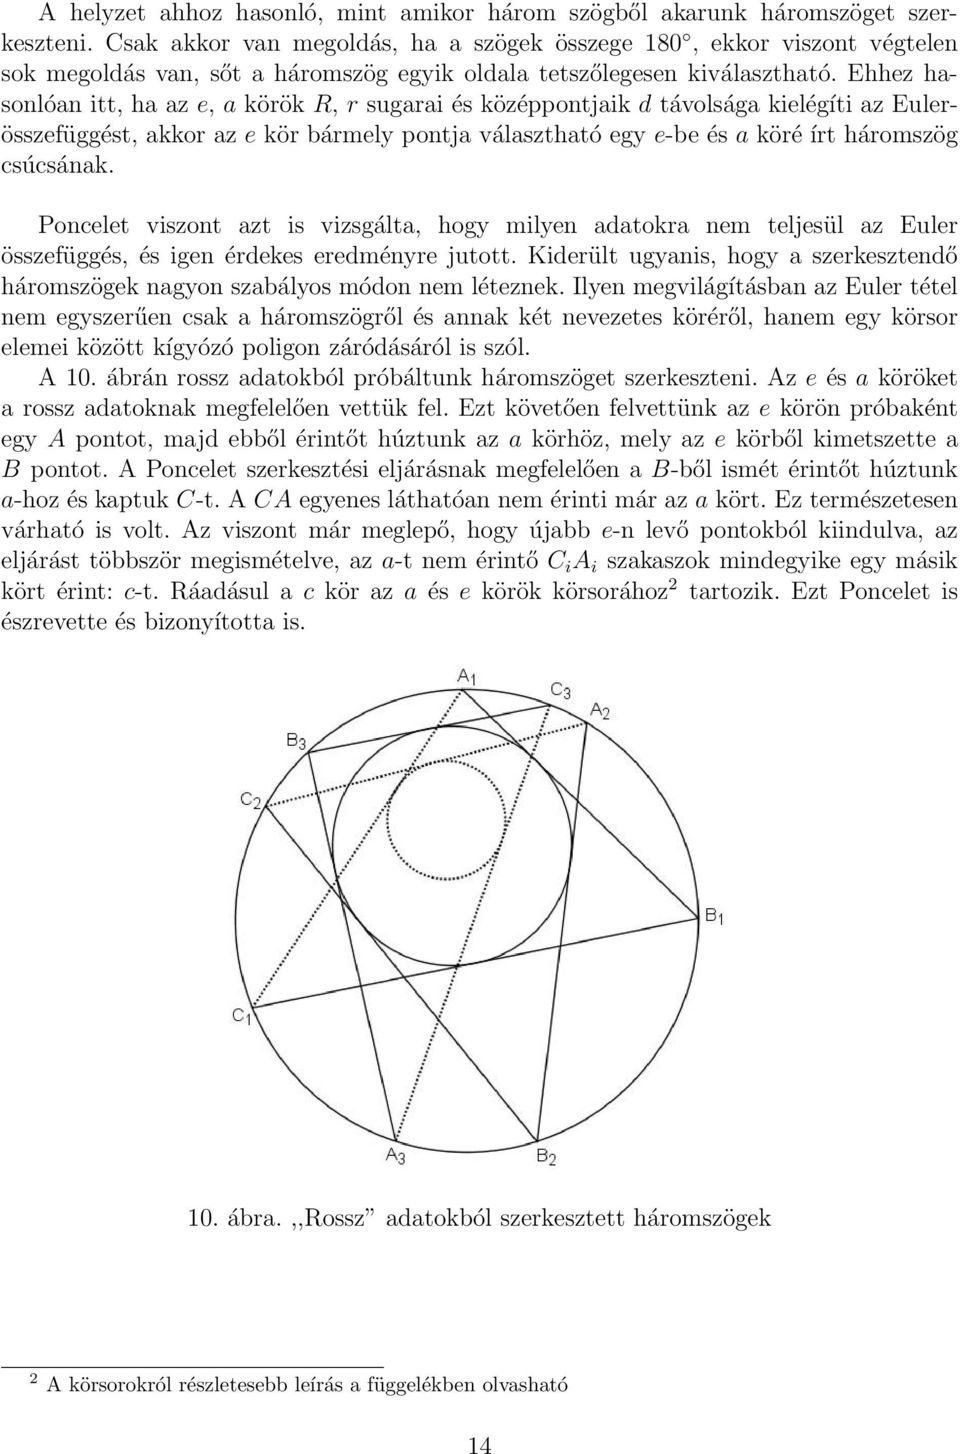 Ehhez hasonóan itt, ha az e, a körök R, r sugarai és középpontjaik d távosága kieégíti az Euerösszefüggést, akkor az e kör bármey pontja váasztható egy e-be és a köré írt háromszög csúcsának.